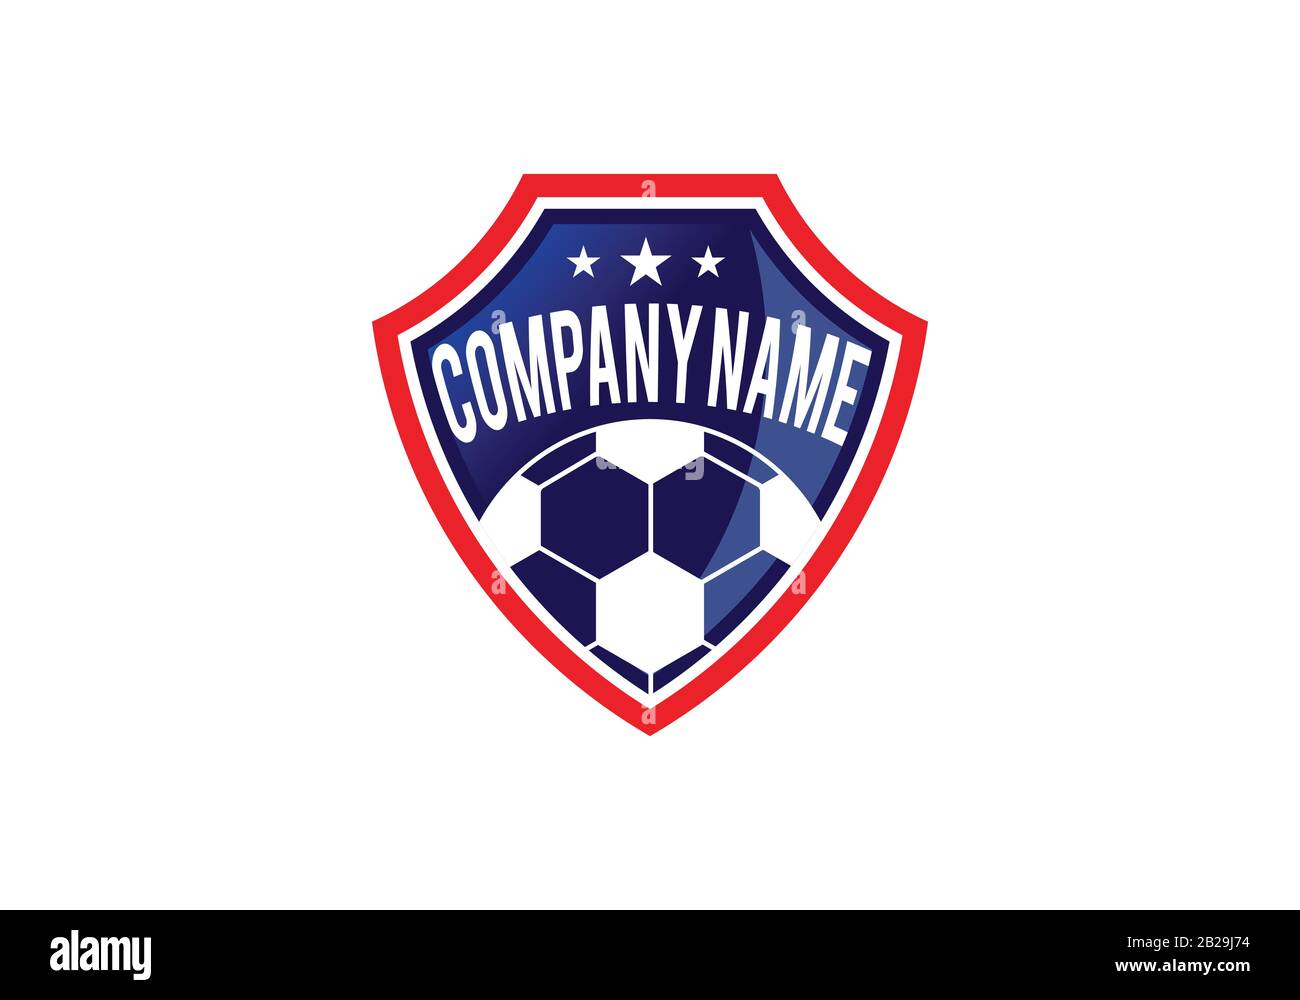 Fußball-Fußball- und Schild-Logo-Designs, Fußball-Emblem-Logo-Vorlage Vektorgrafiken Stock Vektor